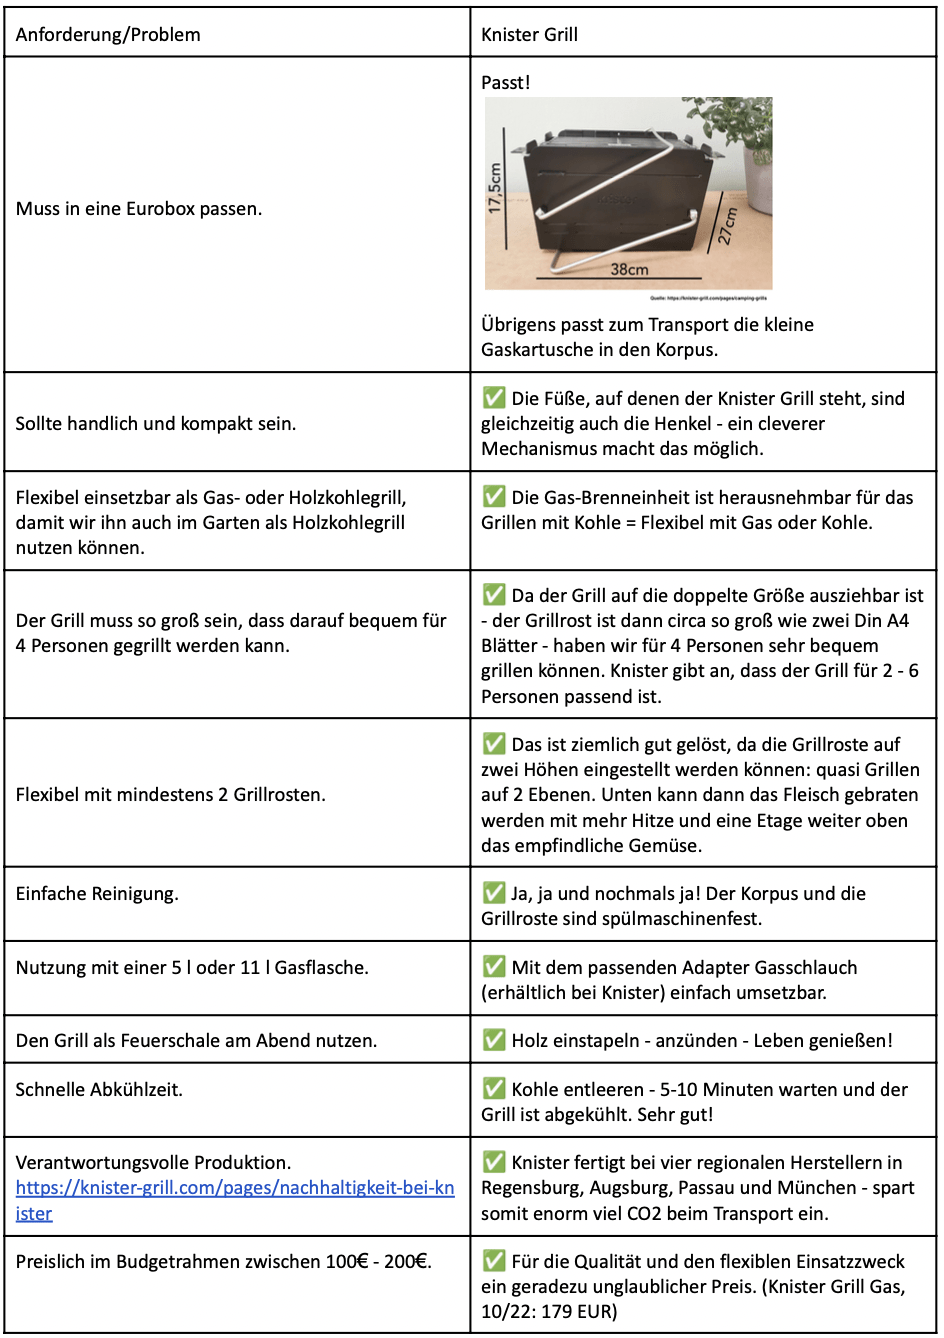 Anforderungen an den Knister Grill in einer Tabelle dargestellt